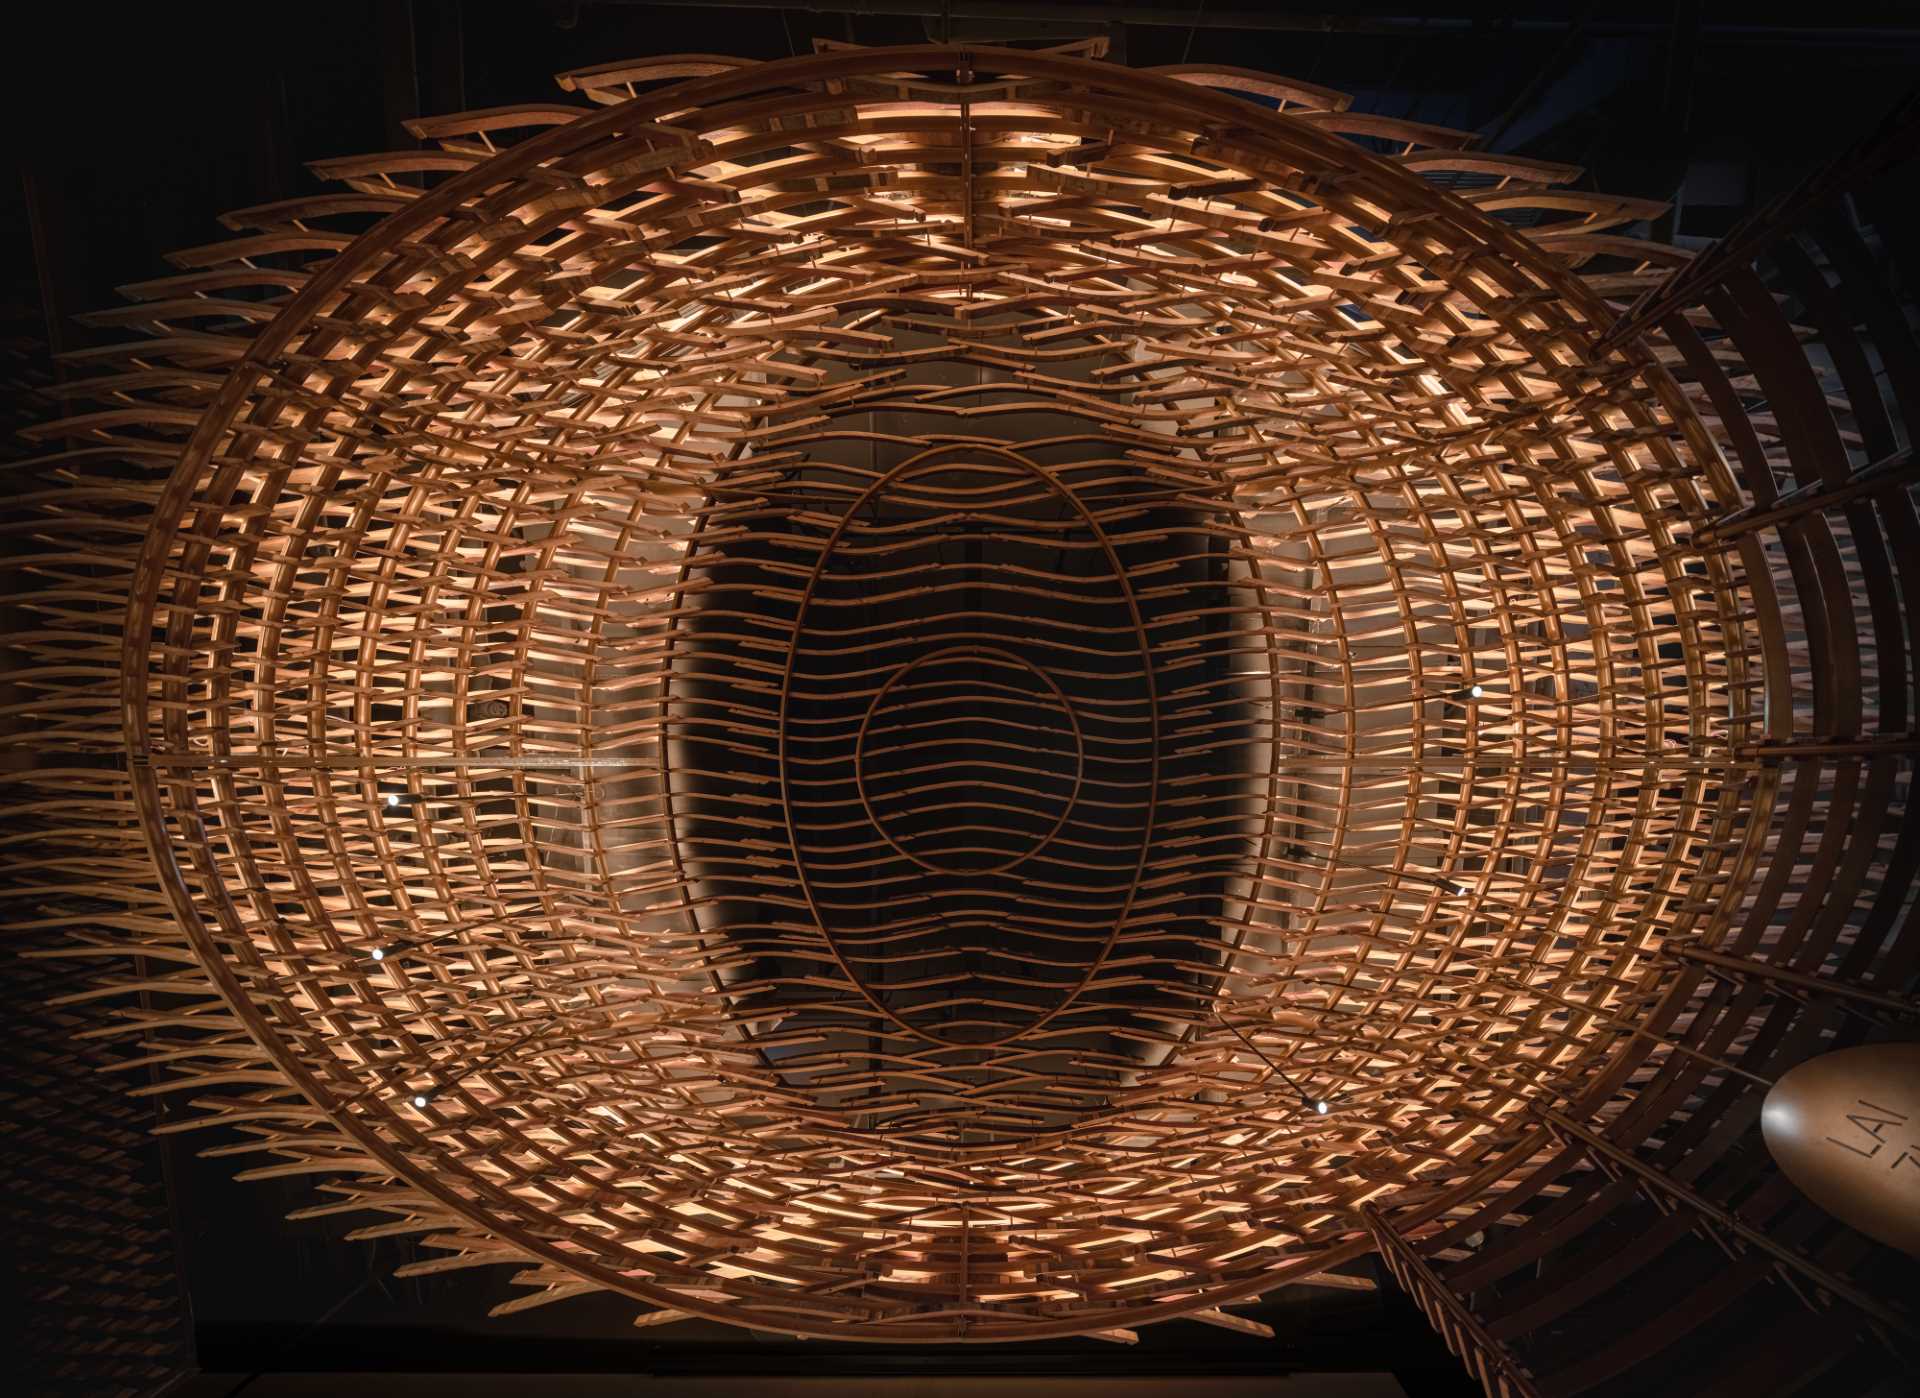 6000 قطعه بشکه ویسکی چوبی دور ریخته شده برای ساخت این نوار مدرن بازیافت شد.